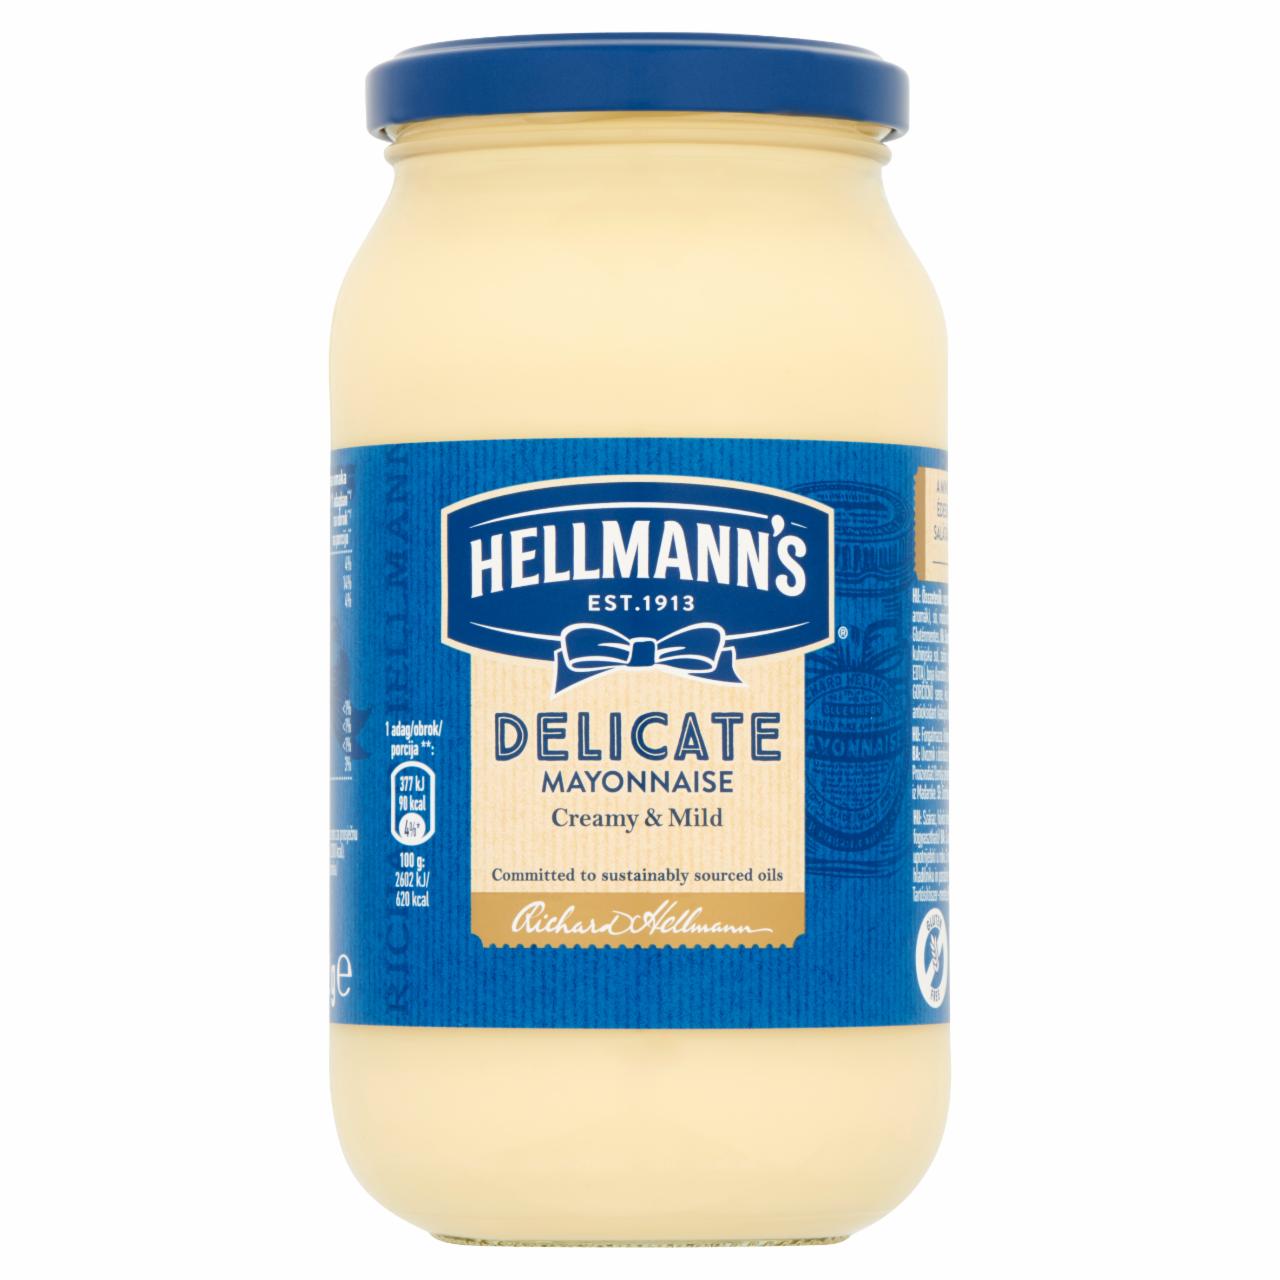 Képek - Hellmann's Delicate majonéz 412 g